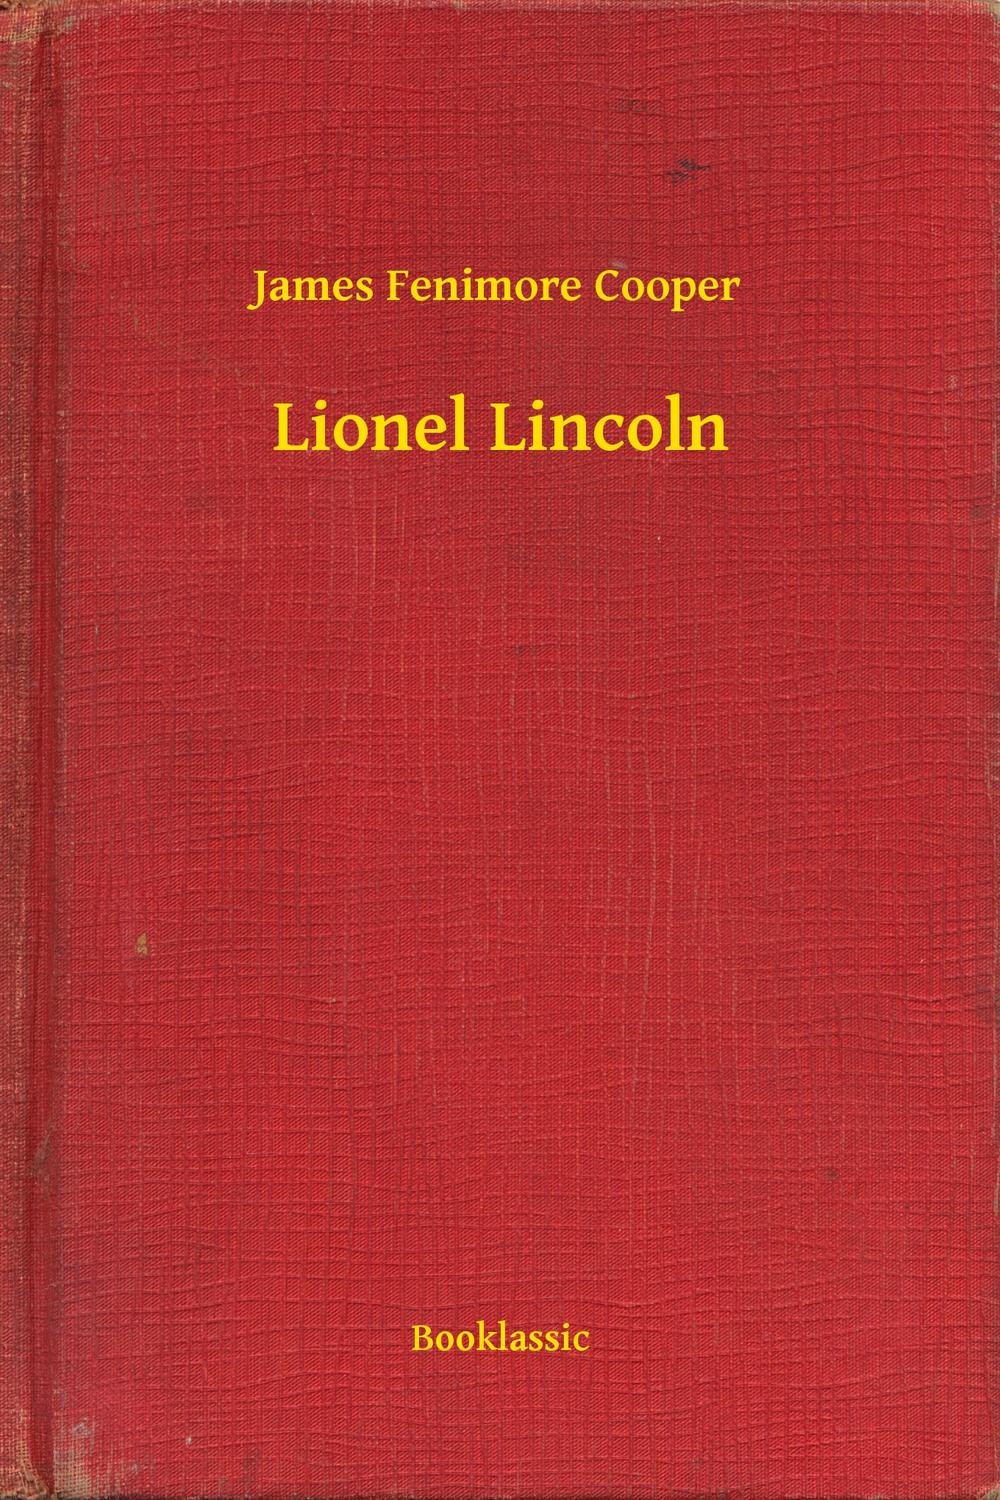 Lionel Lincoln - James Fenimore Cooper,,